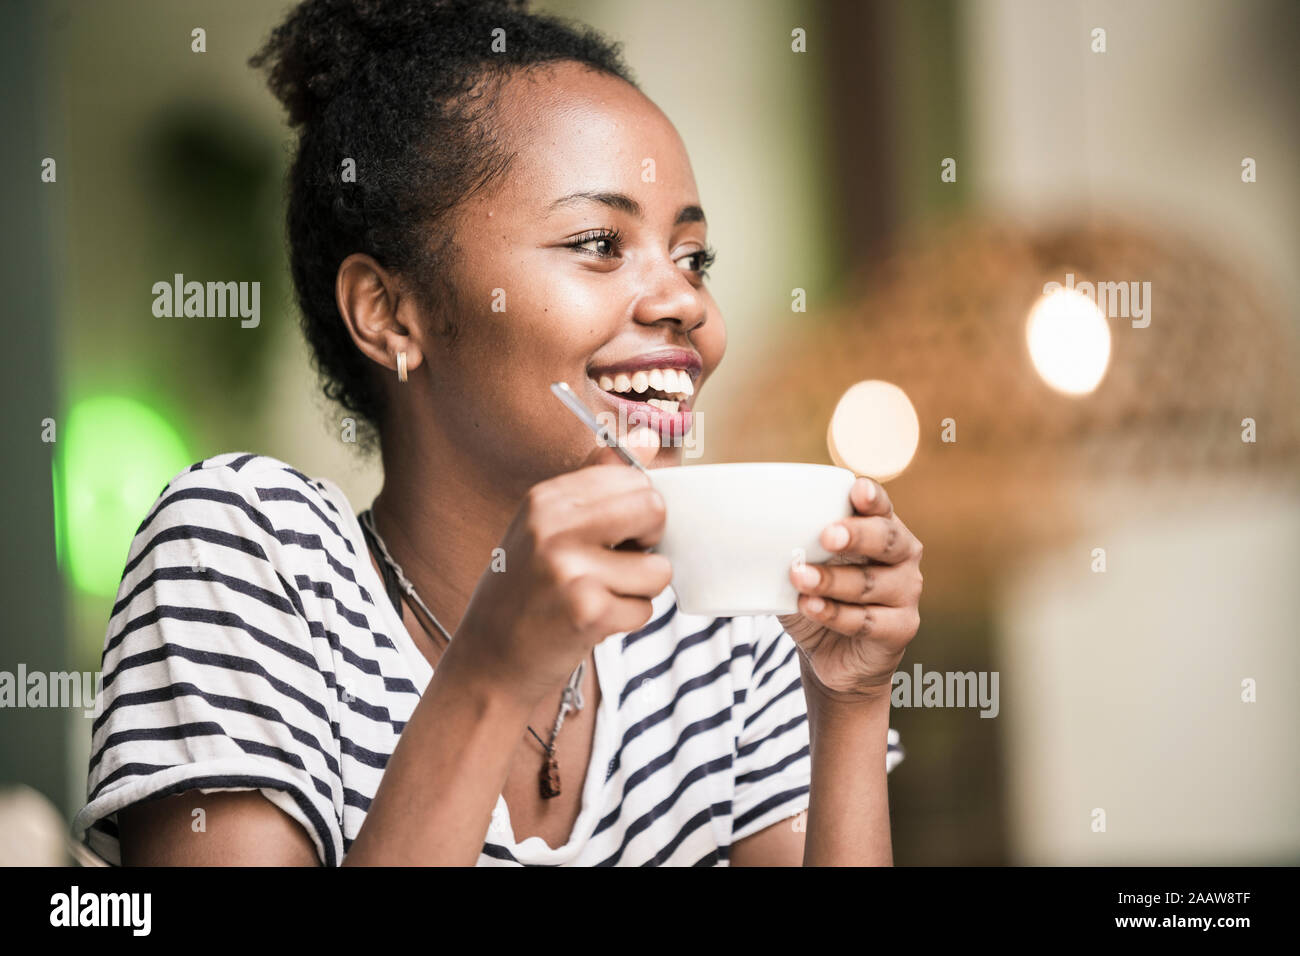 Retrato de mujer joven feliz celebración de la taza de café en una cafetería Foto de stock